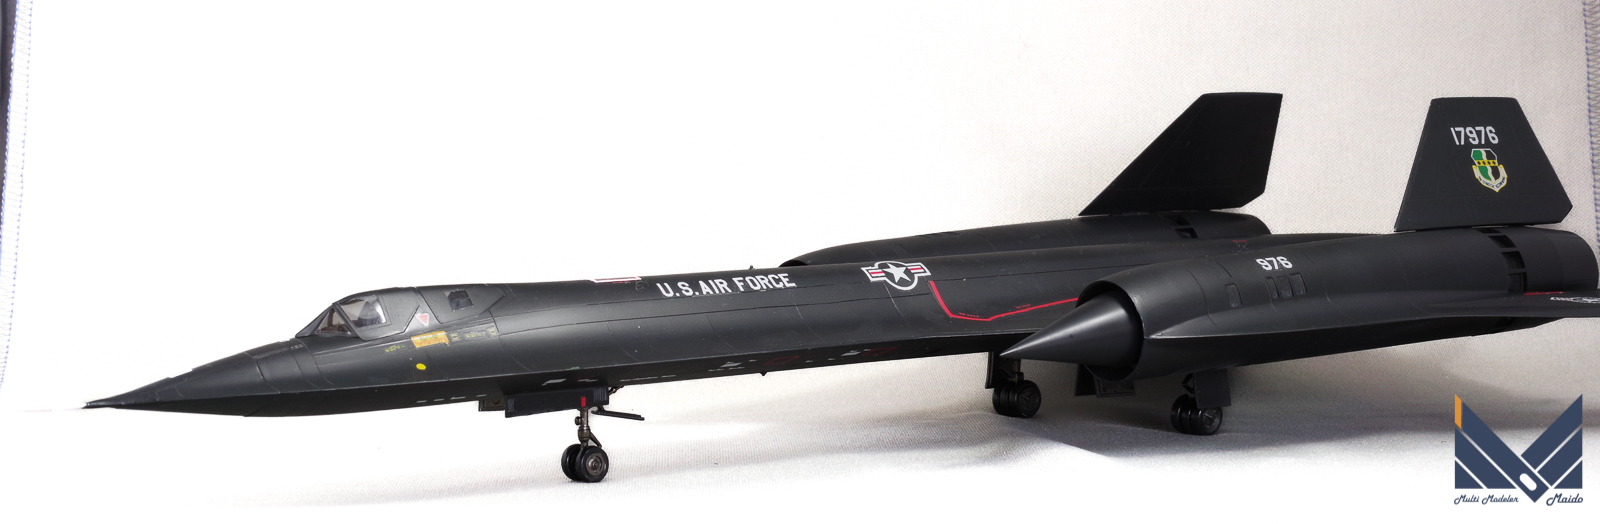 ハセガワ 1/72 アメリカ空軍 偵察機 SR-71 完成品 HASEGAWA 完成品 